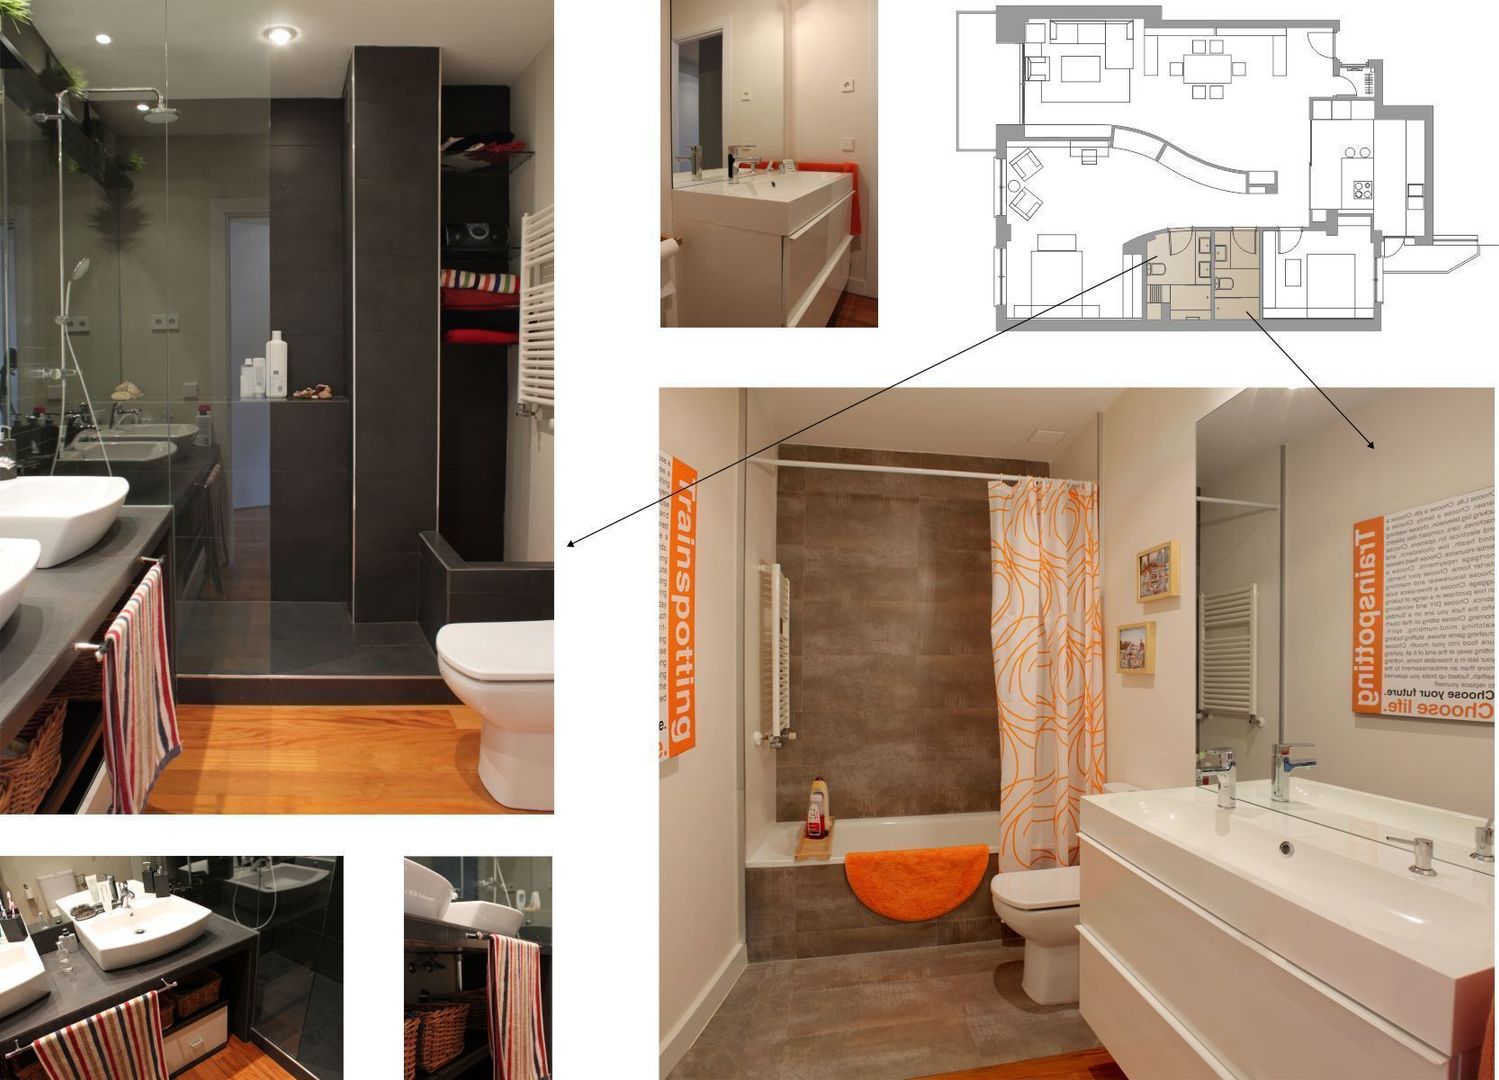 proyecto y obra de reforma en vivienda, elementos interiorismo y diseño elementos interiorismo y diseño Modern bathroom